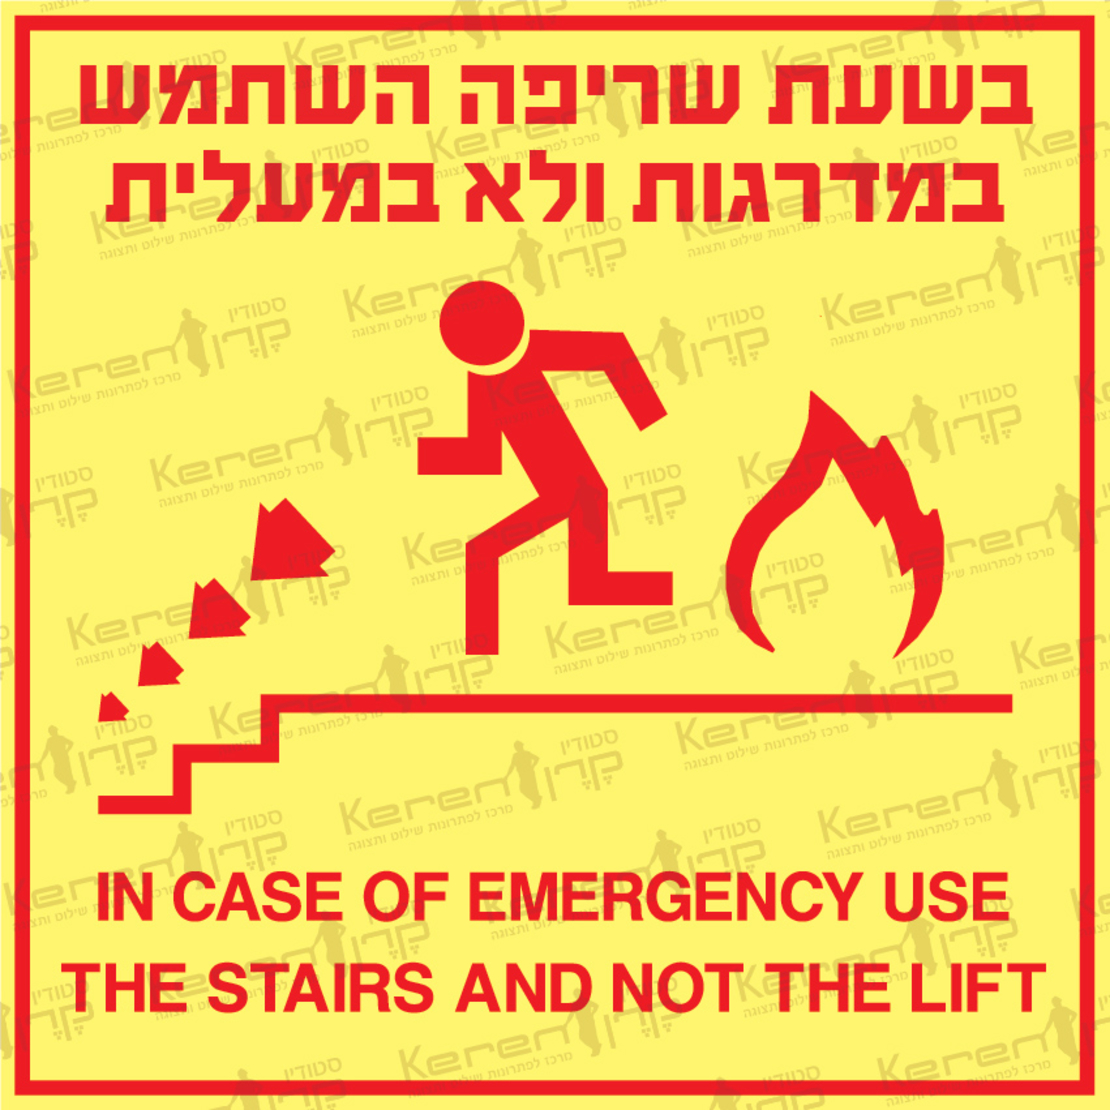 בשעת שריפה השתמש במדרגות ולא במעלית